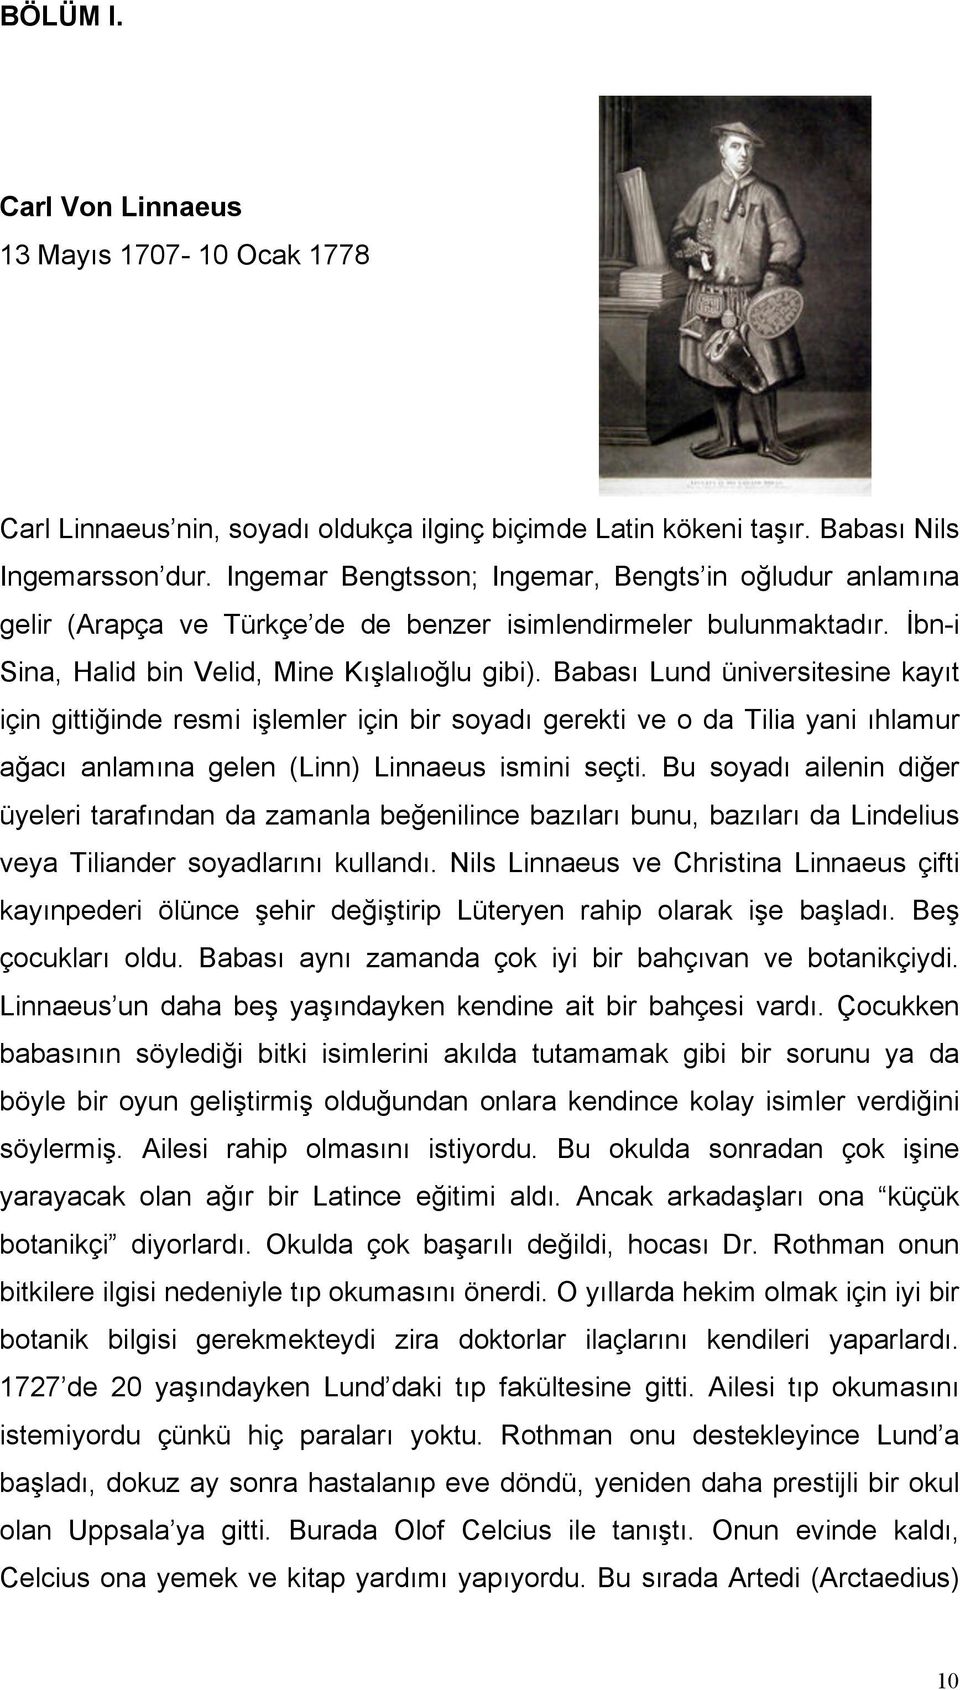 Babası Lund üniversitesine kayıt için gittiğinde resmi işlemler için bir soyadı gerekti ve o da Tilia yani ıhlamur ağacı anlamına gelen (Linn) Linnaeus ismini seçti.